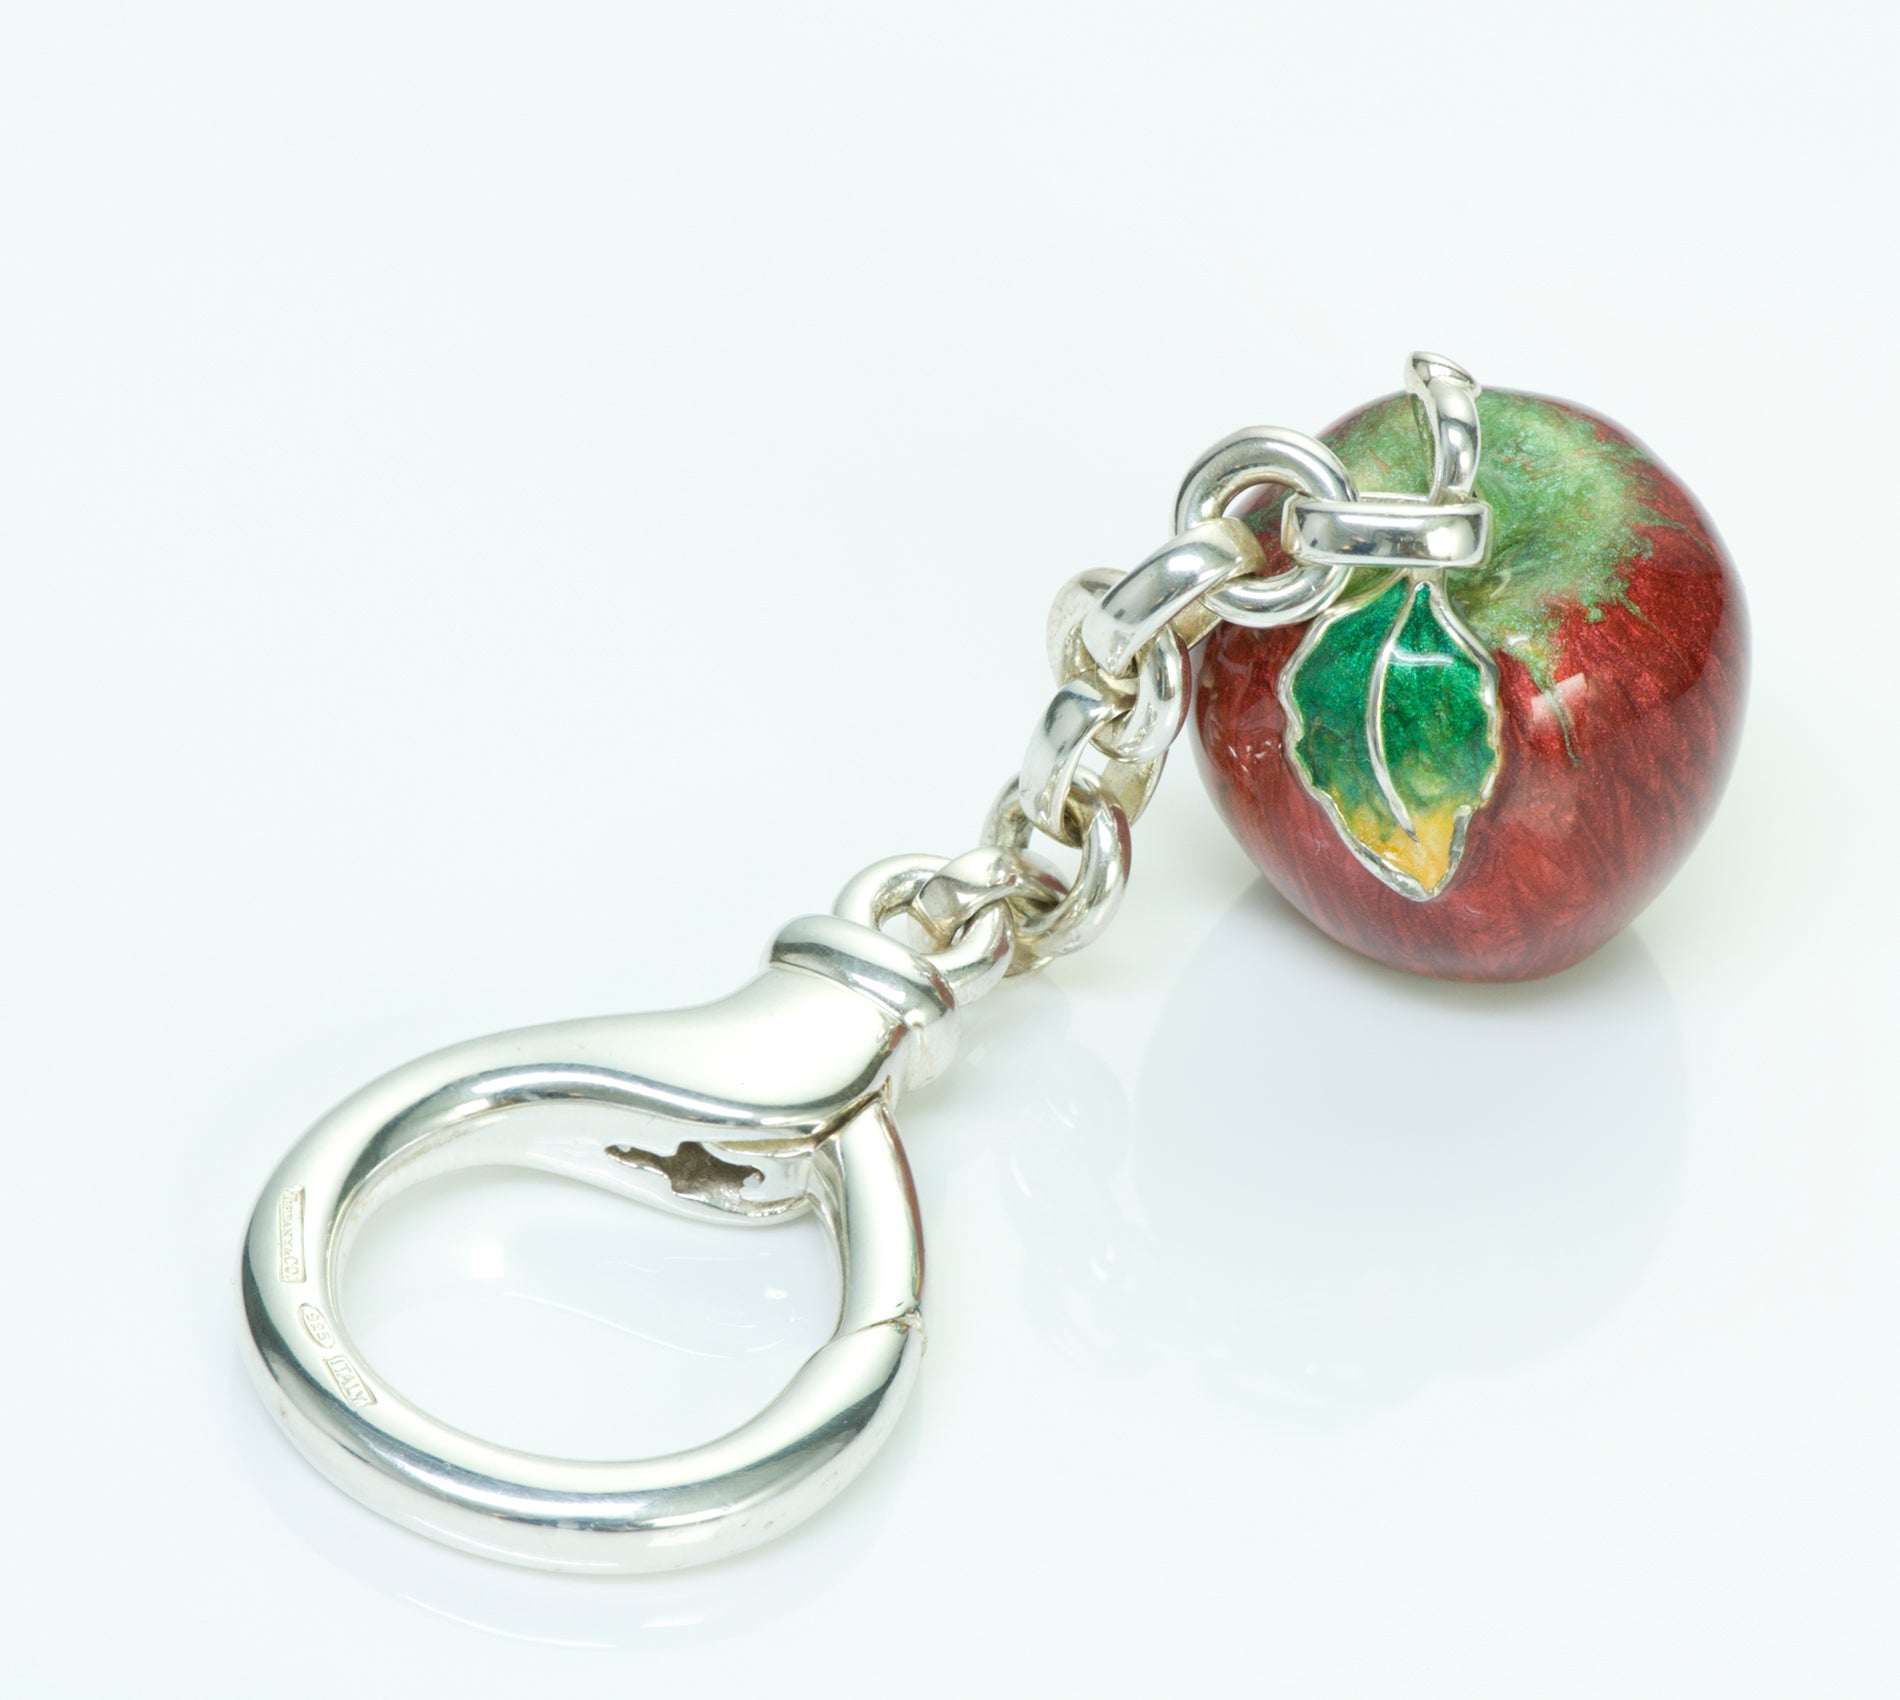 Tiffany & Co. Sterling Silver Enamel Apple Key Chain